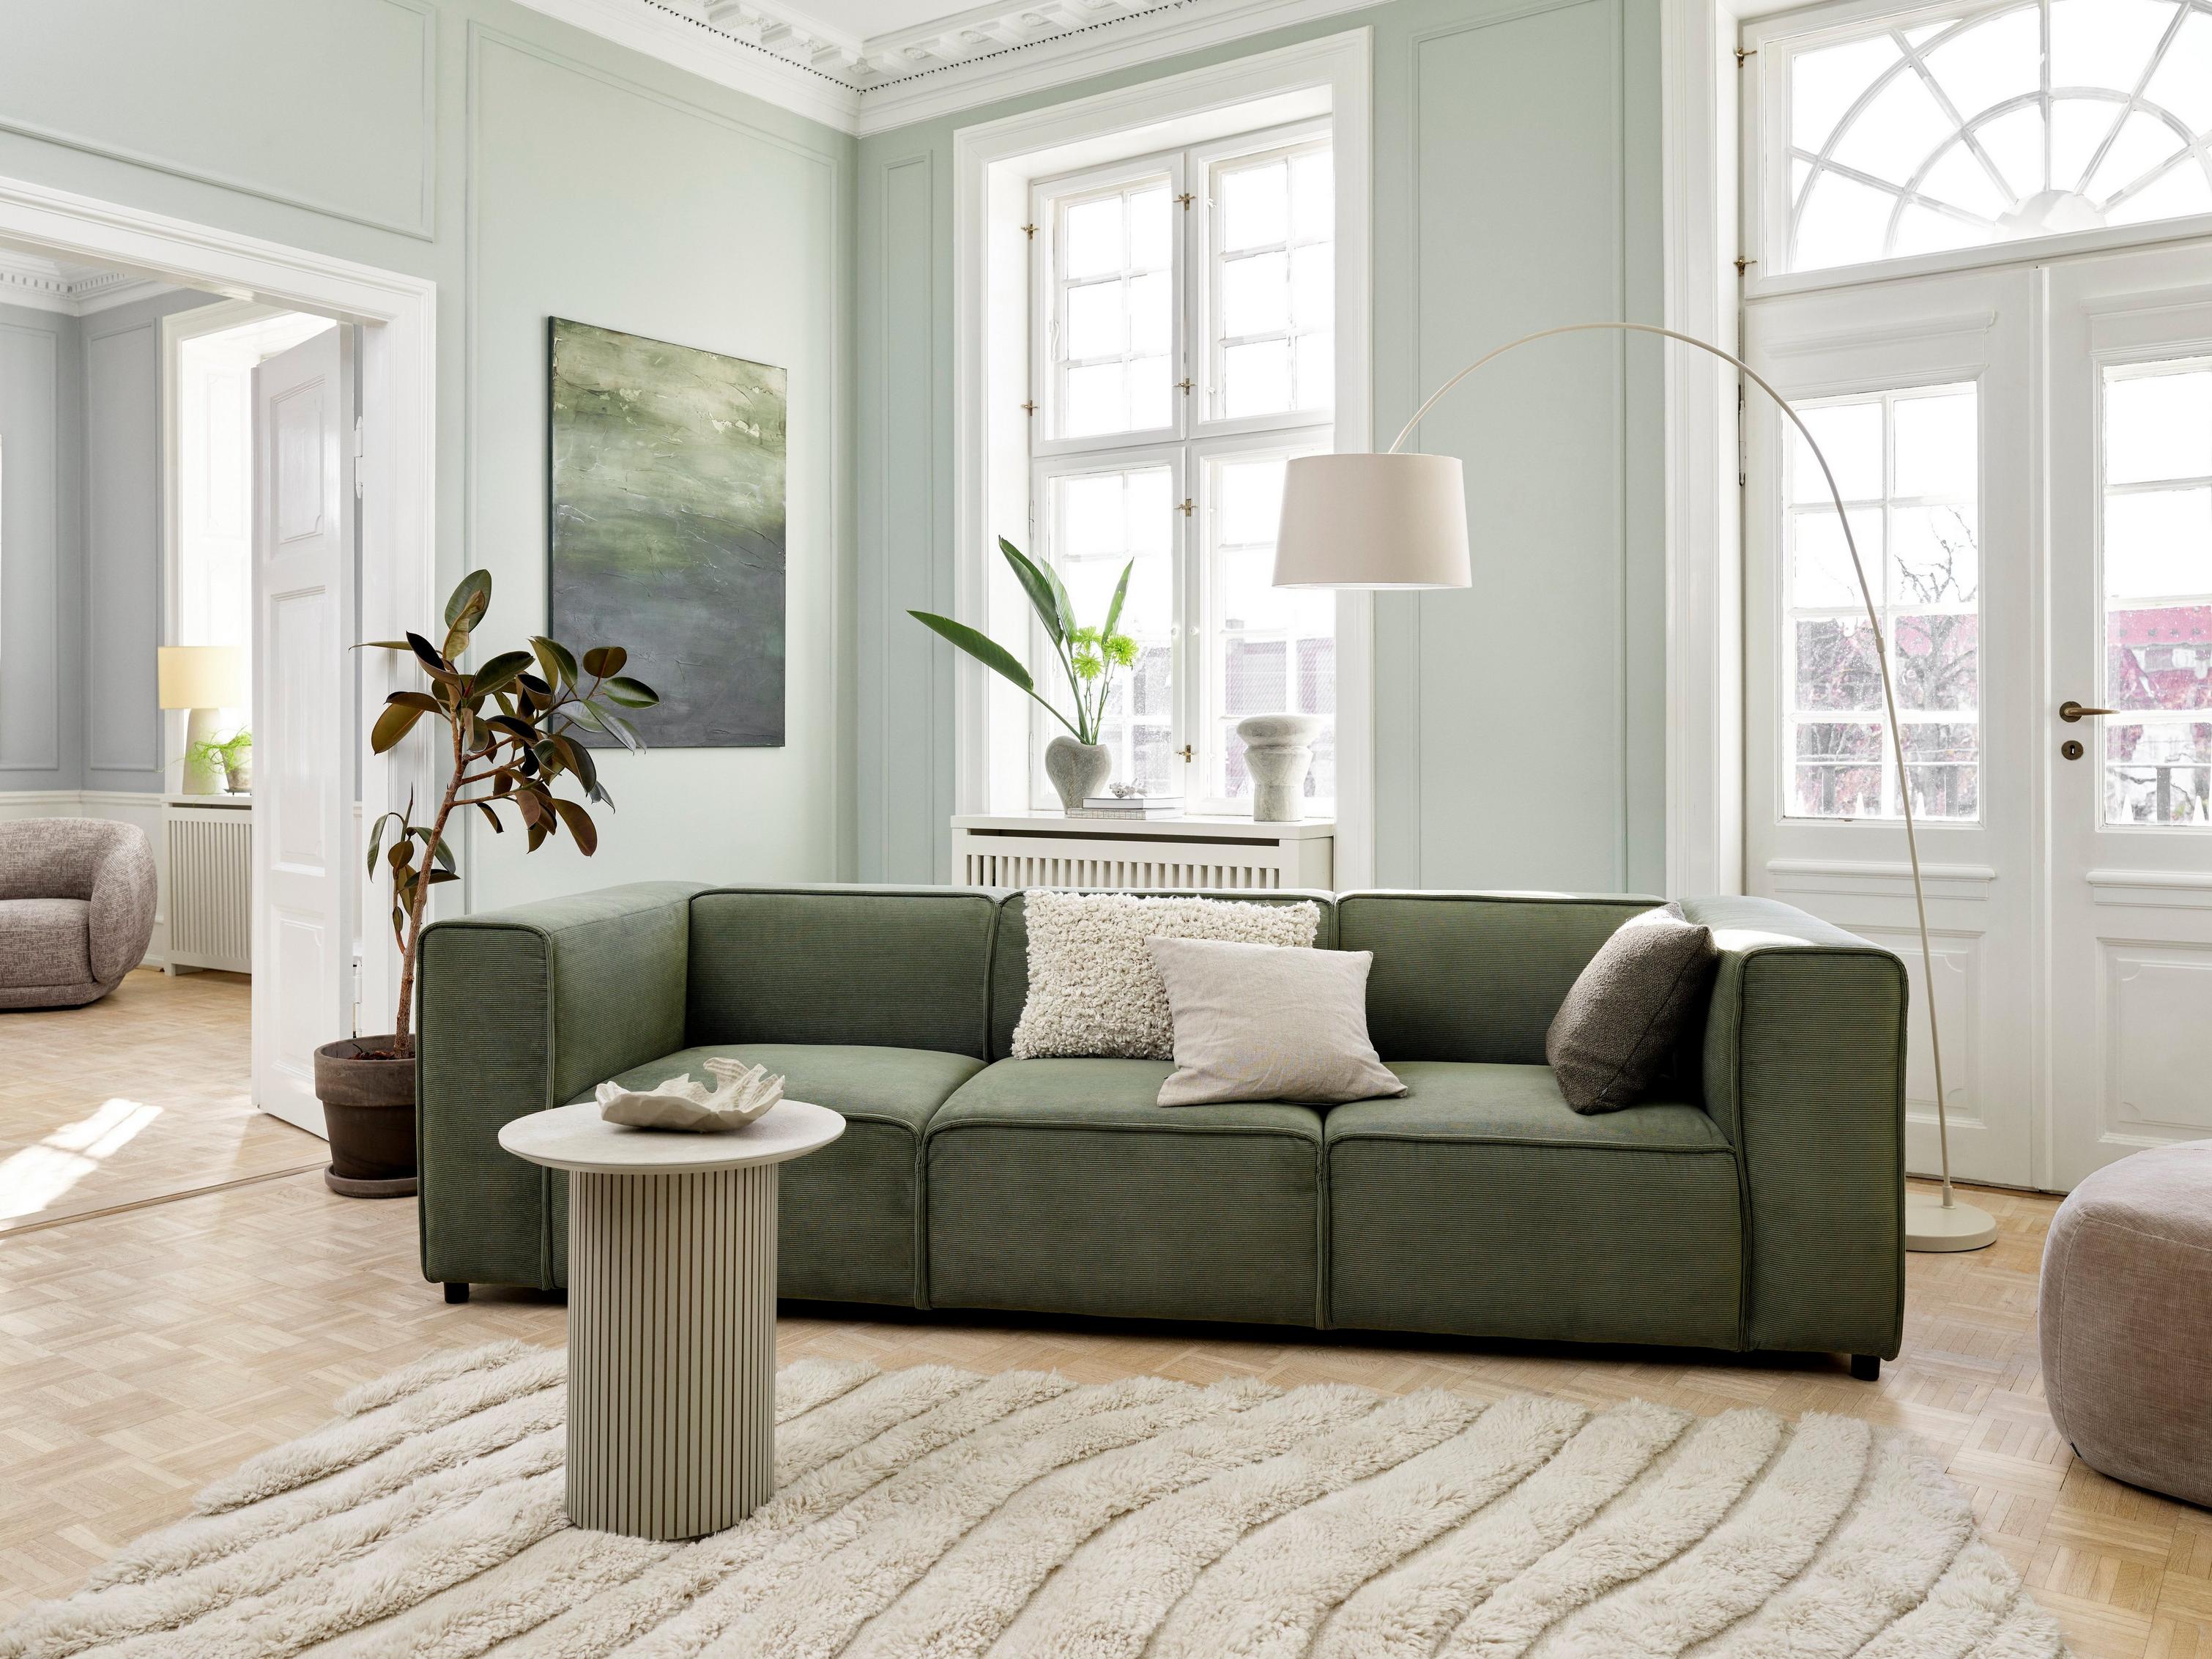 Een op Japandi geïnspireerde woonkamer met de Carmo zitbank in groene Skagen stof.